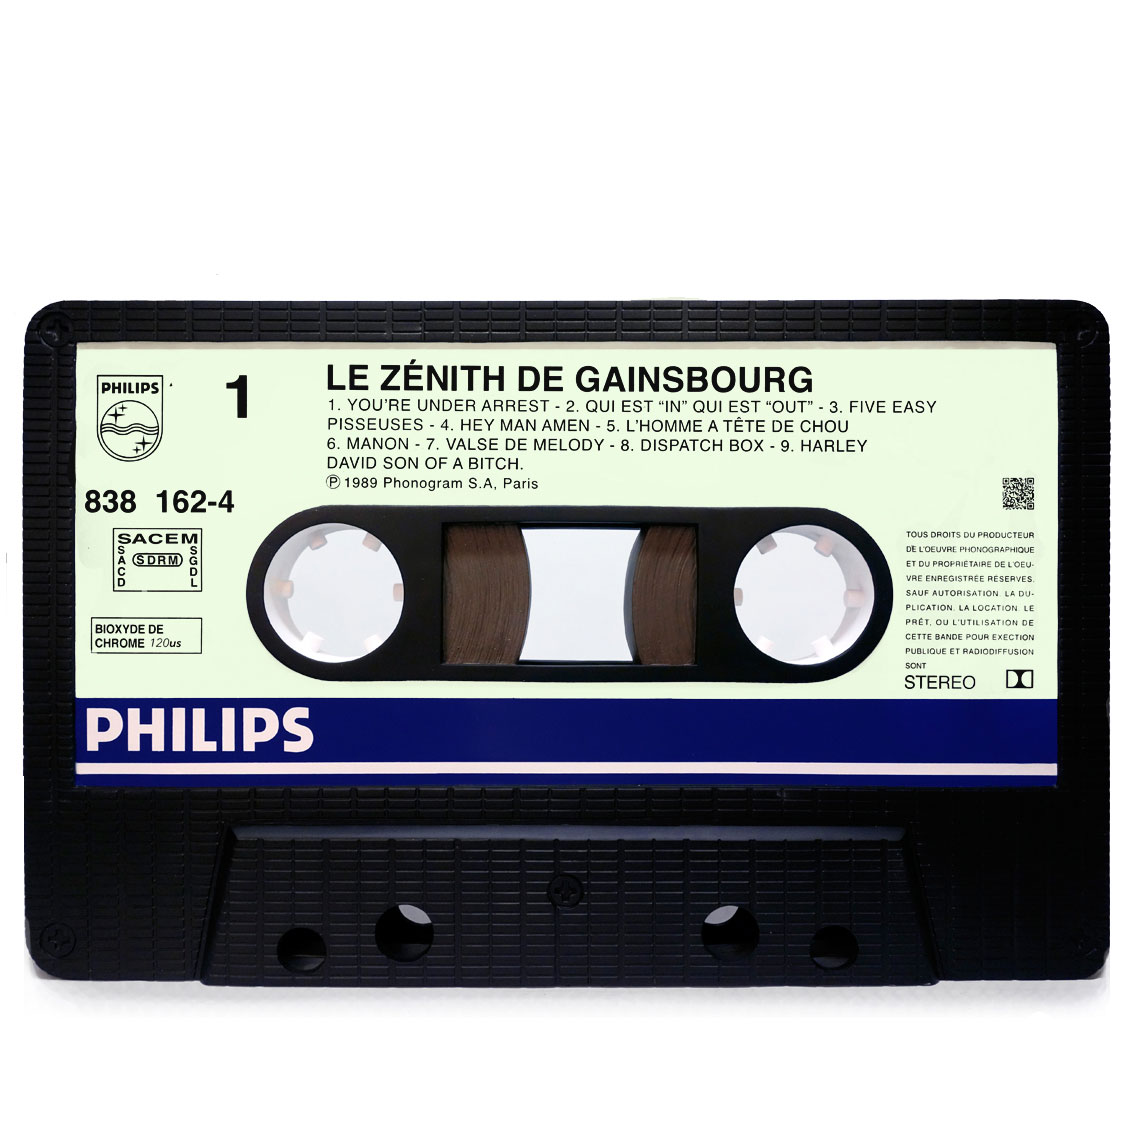 le zenith de gainsbourg cassette tape table by michaelviviani